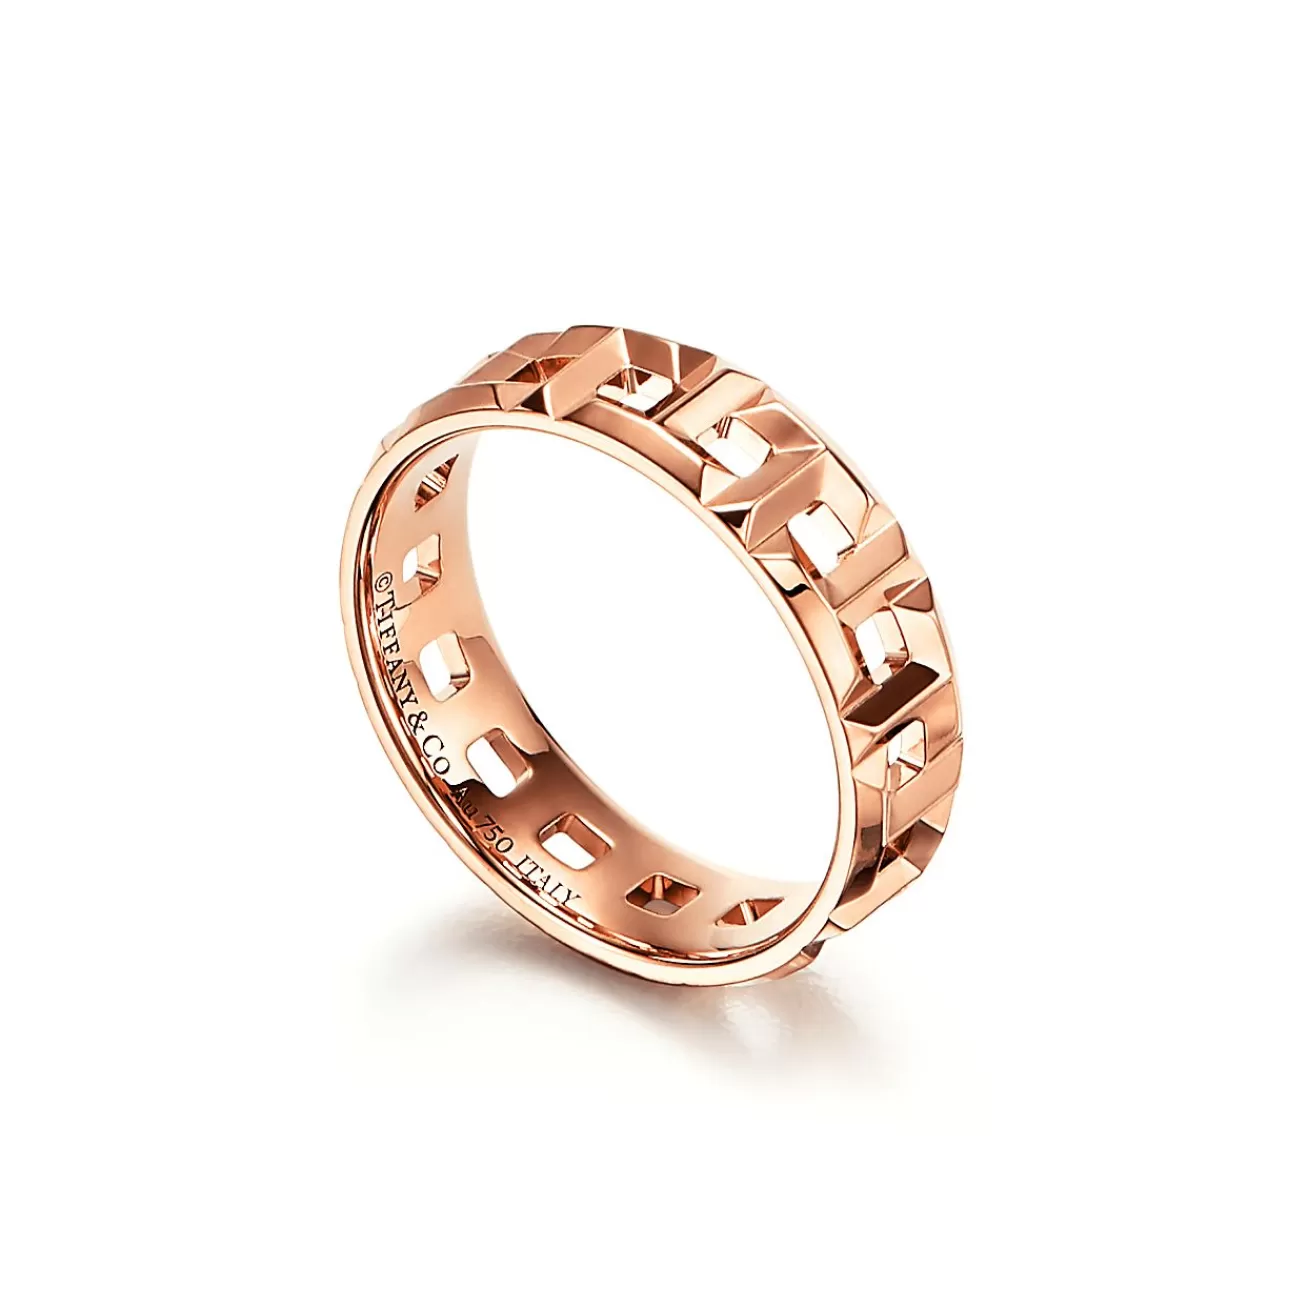 Tiffany & Co. Tiffany T True wide ring in 18k rose gold, 5.5 mm wide. | ^Women Rings | Men's Jewelry